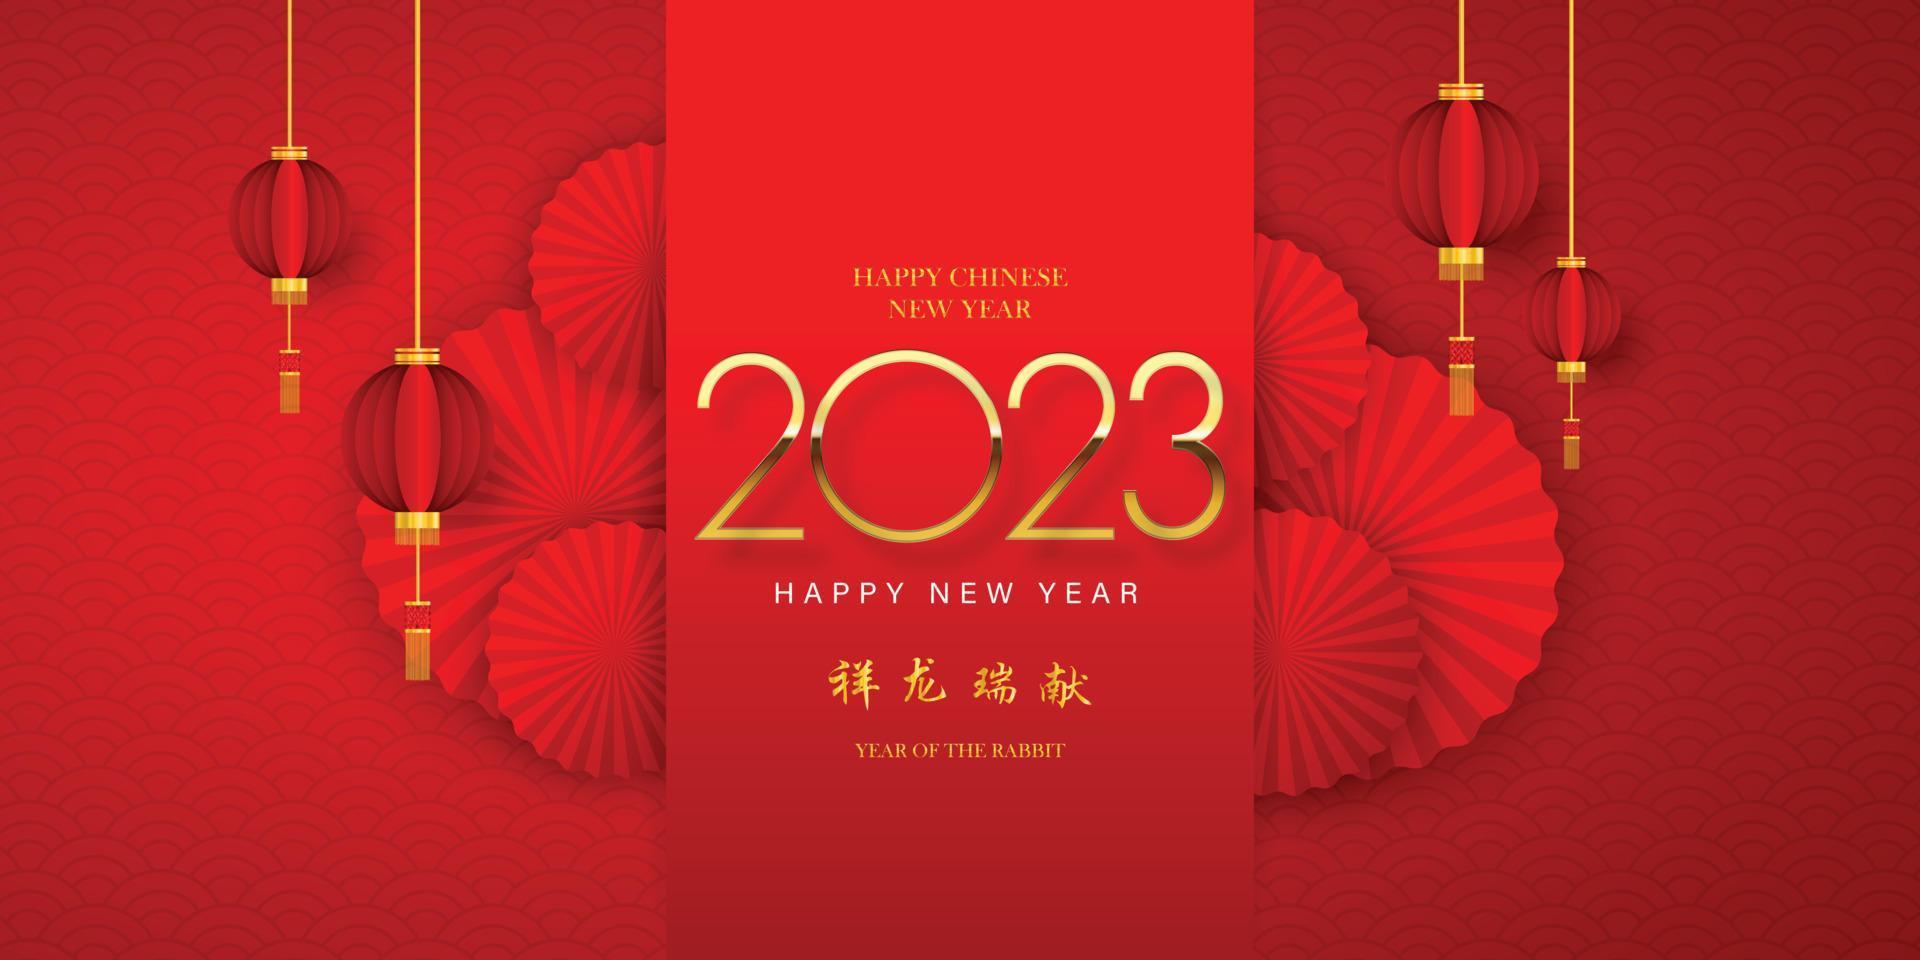 frohes chinesisches neujahr 2023 im goldenen chinesischen musterrahmen chinesische wortlautübersetzung chinesischer kalender für das kaninchen von kaninchen 2023 vektor